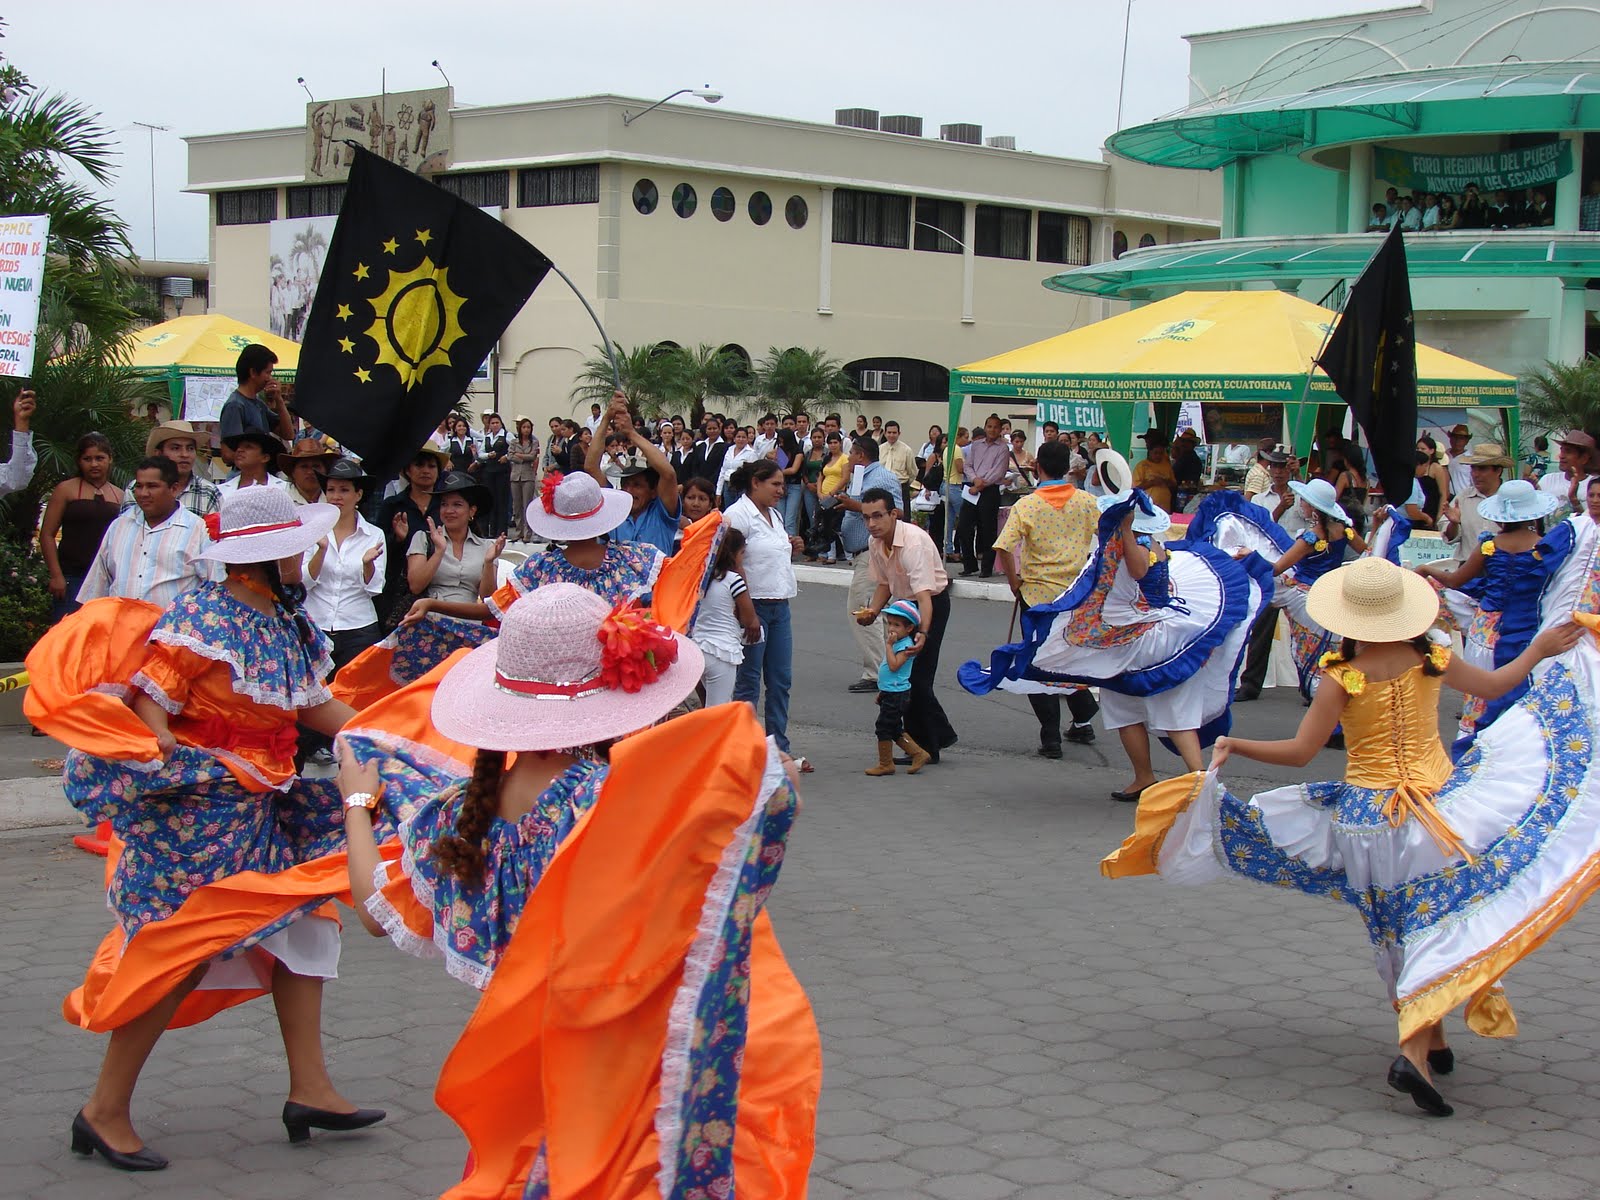 Resumen De La Cultura De Ecuador Culturas Religiones Y Creencias